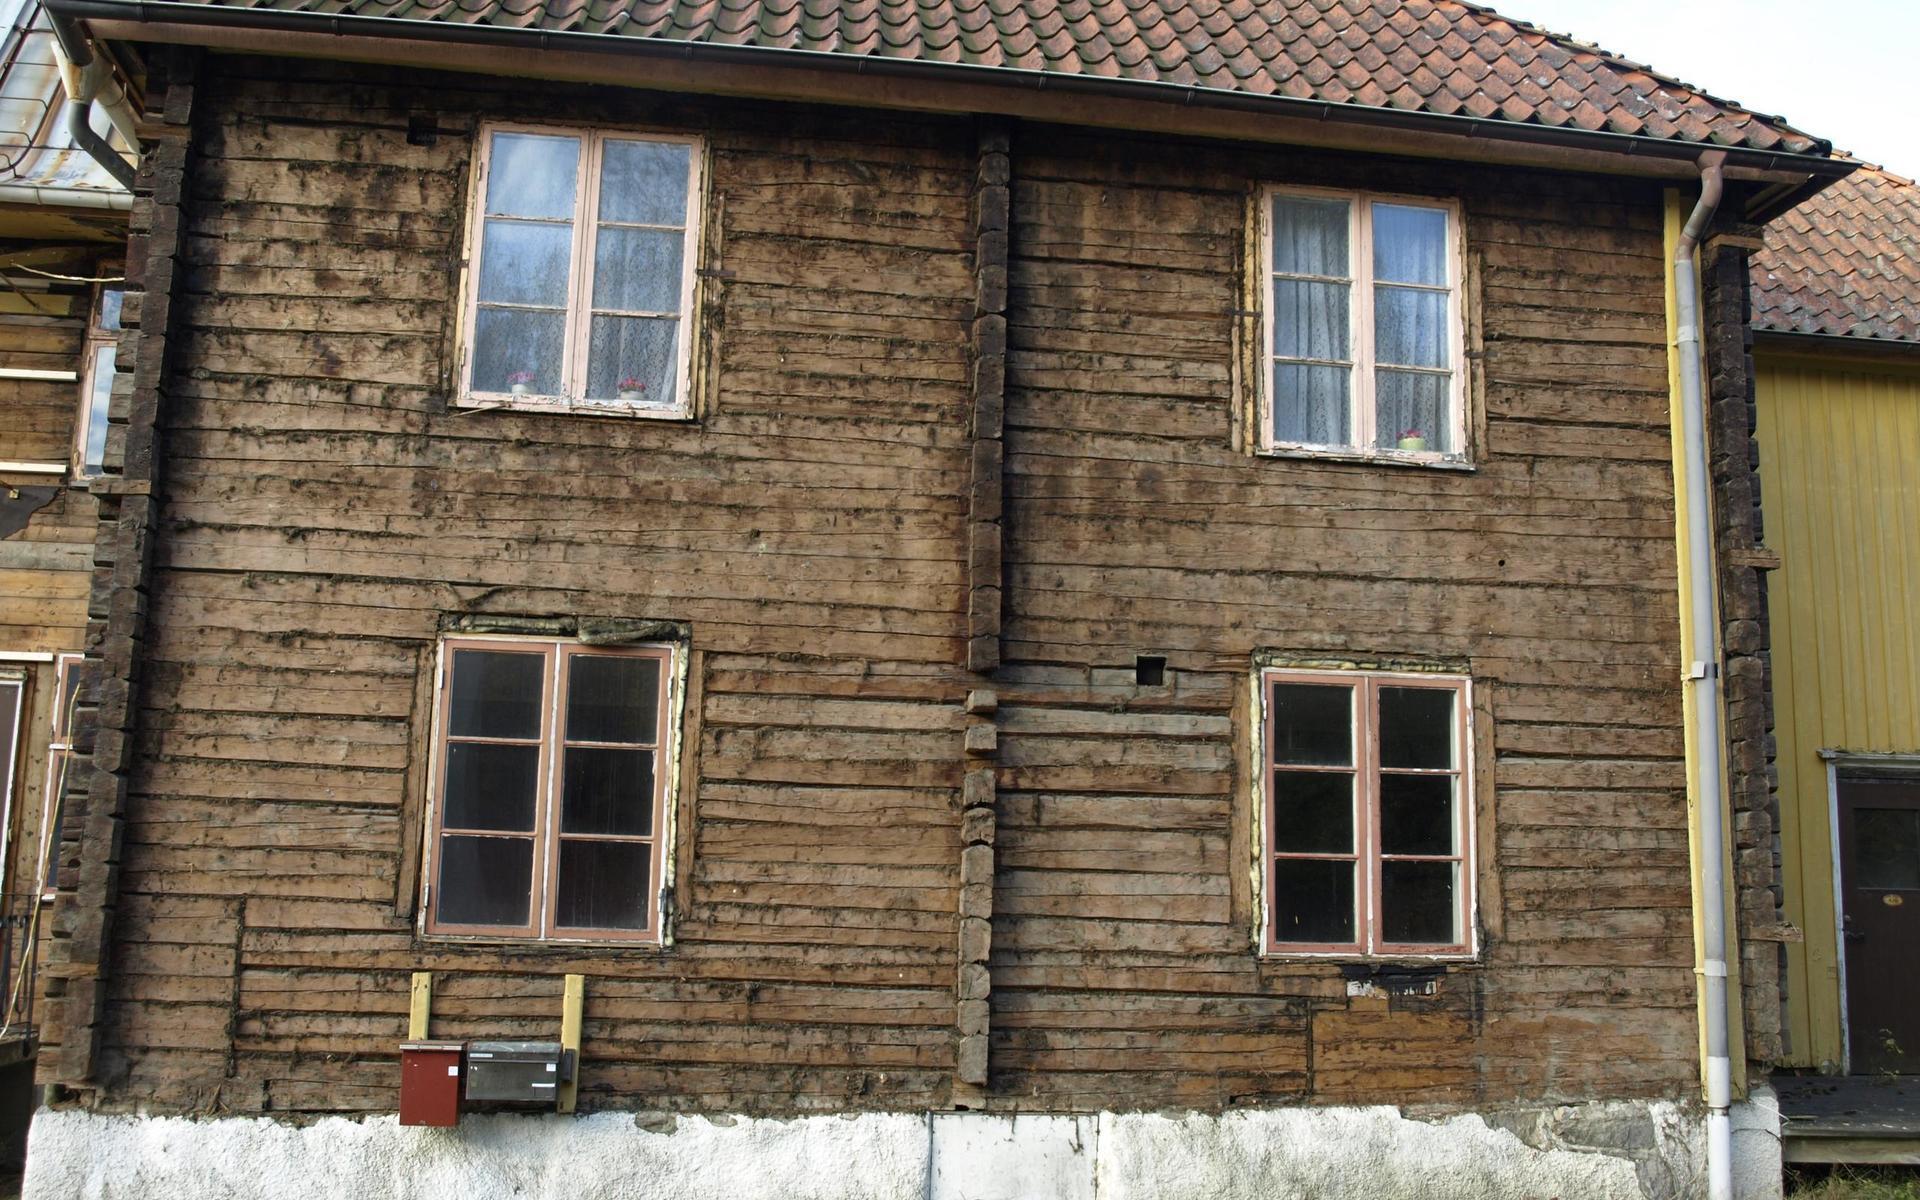 Husets äldsta del dateras till 1600-talet